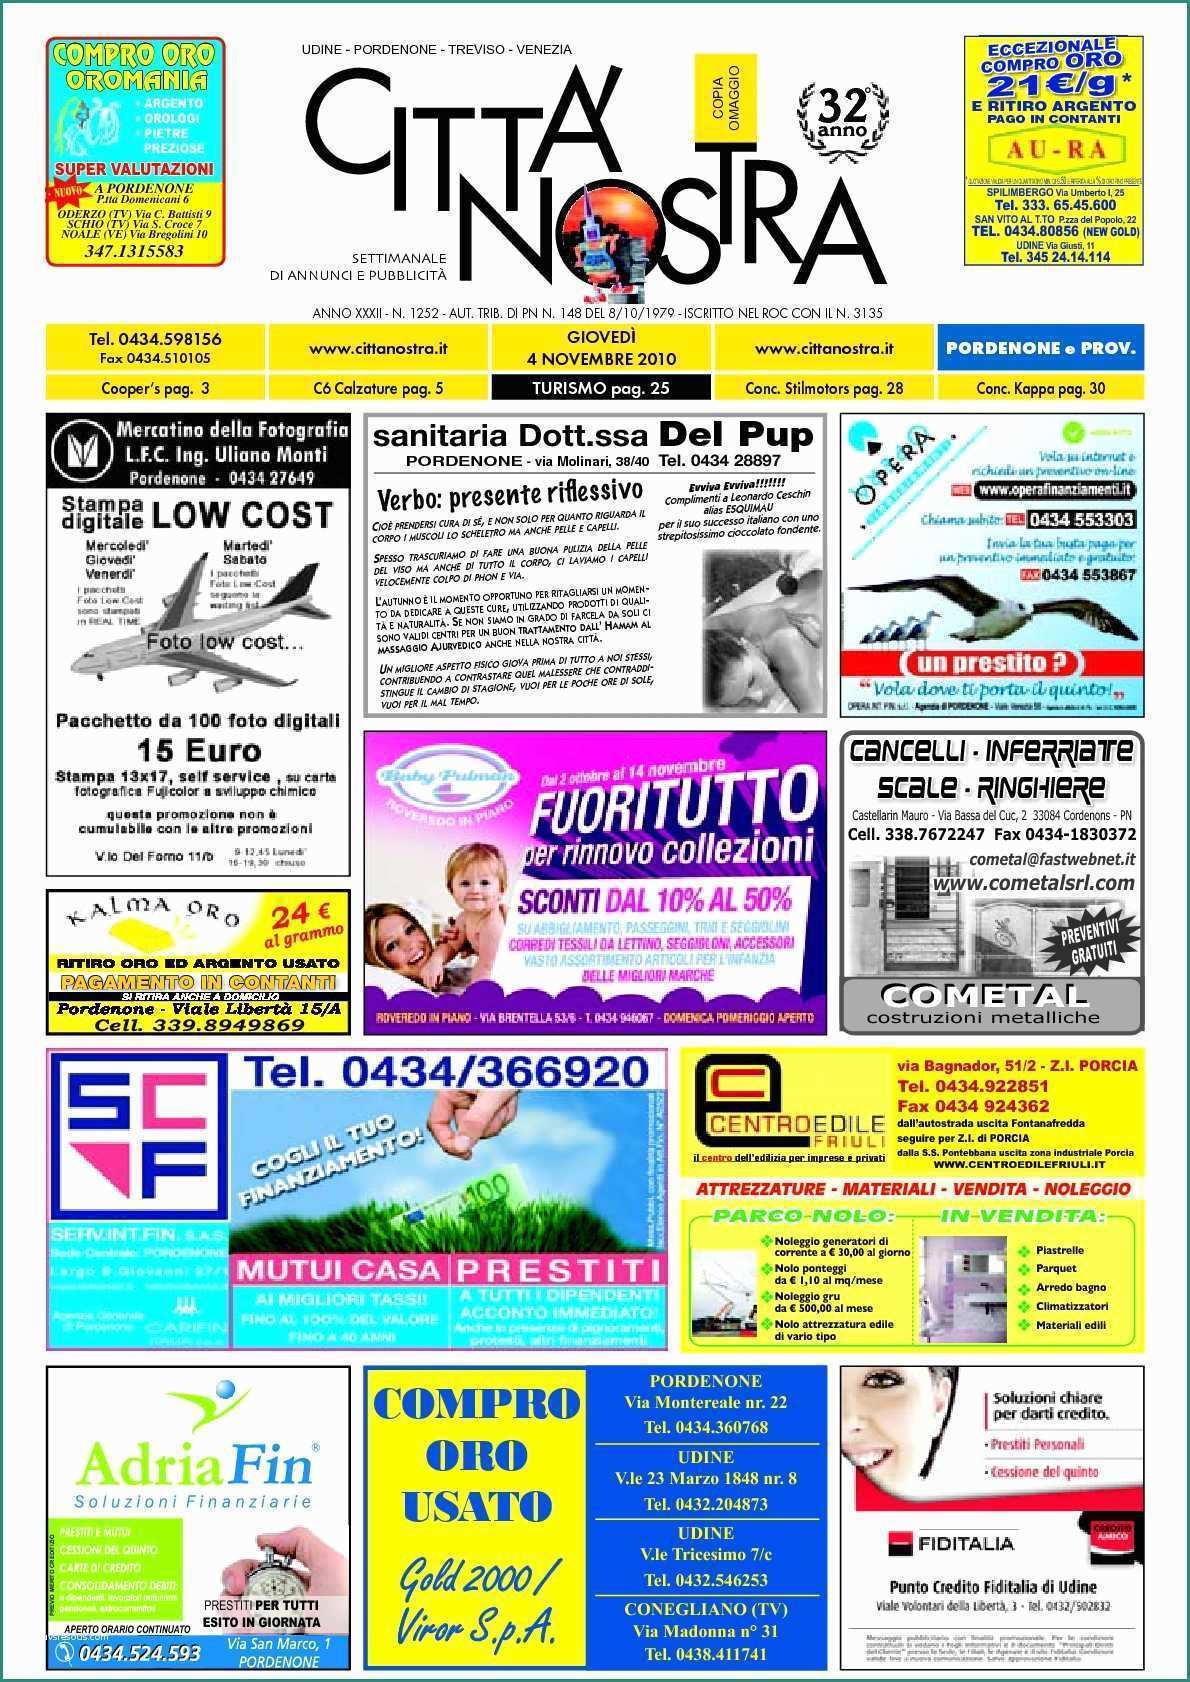 Mondo Convenienza Servizio Clienti E Calaméo Citt  Nostra Pordenone Del 04 11 2010 N 1252